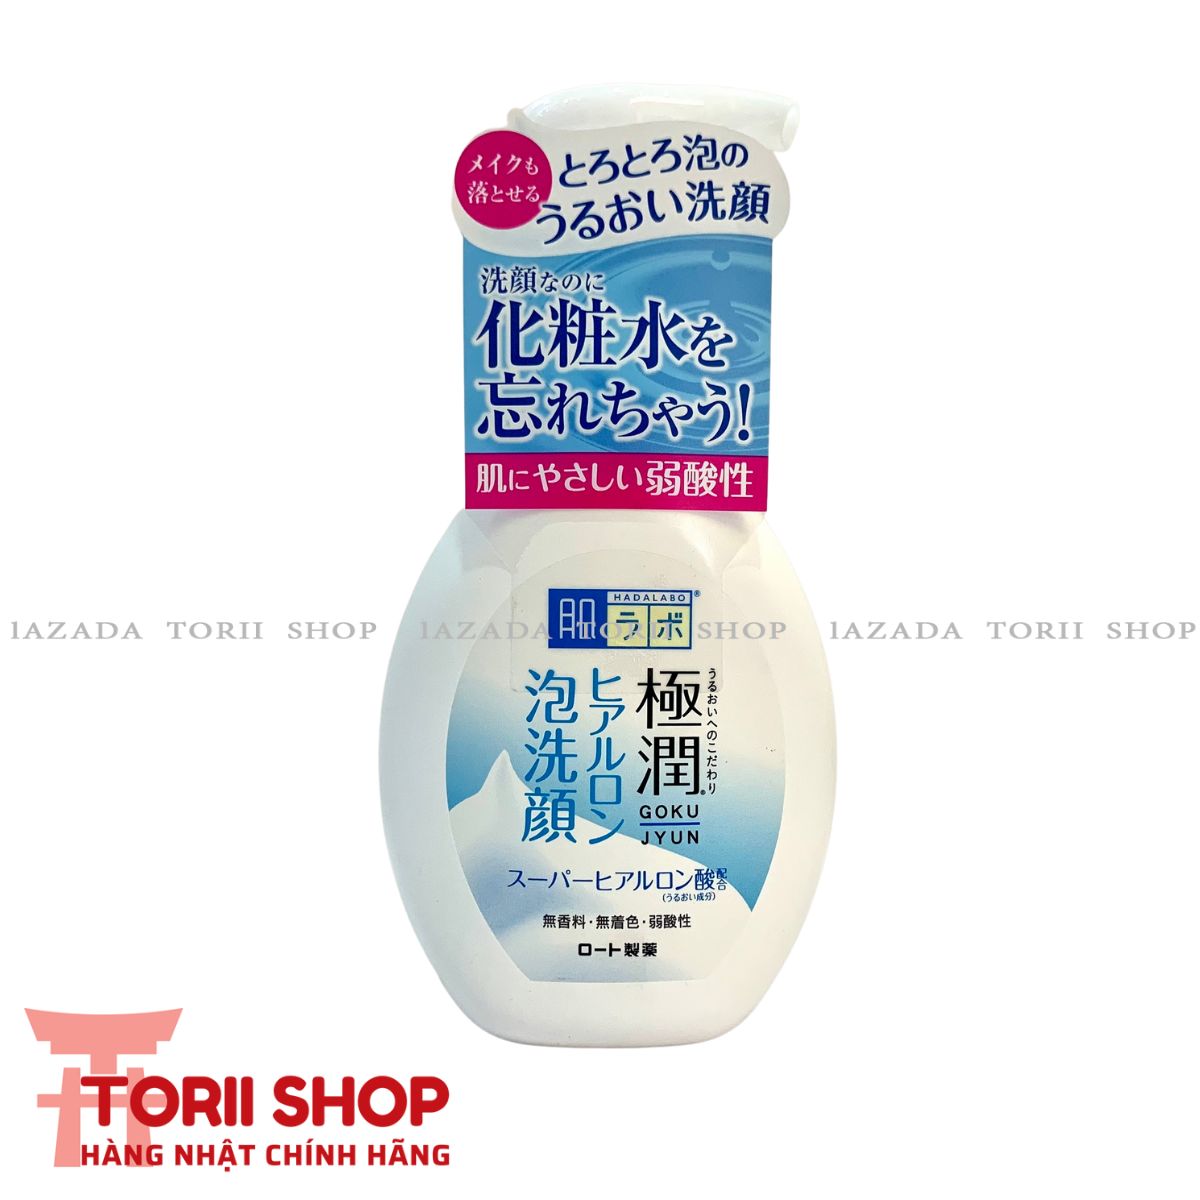 [Chính hãng] Sữa rửa mặt tạo bọt Hada Labo Nhật Bản màu trắng 160ml cho mọi loại da | sữa rửa mặt Hadalabo Gokujyun Foaming Cleanser chai tạo bọt sẵn nội địa Nhật dưỡng ẩm cho da khô - THEMIS Cosmetics Store